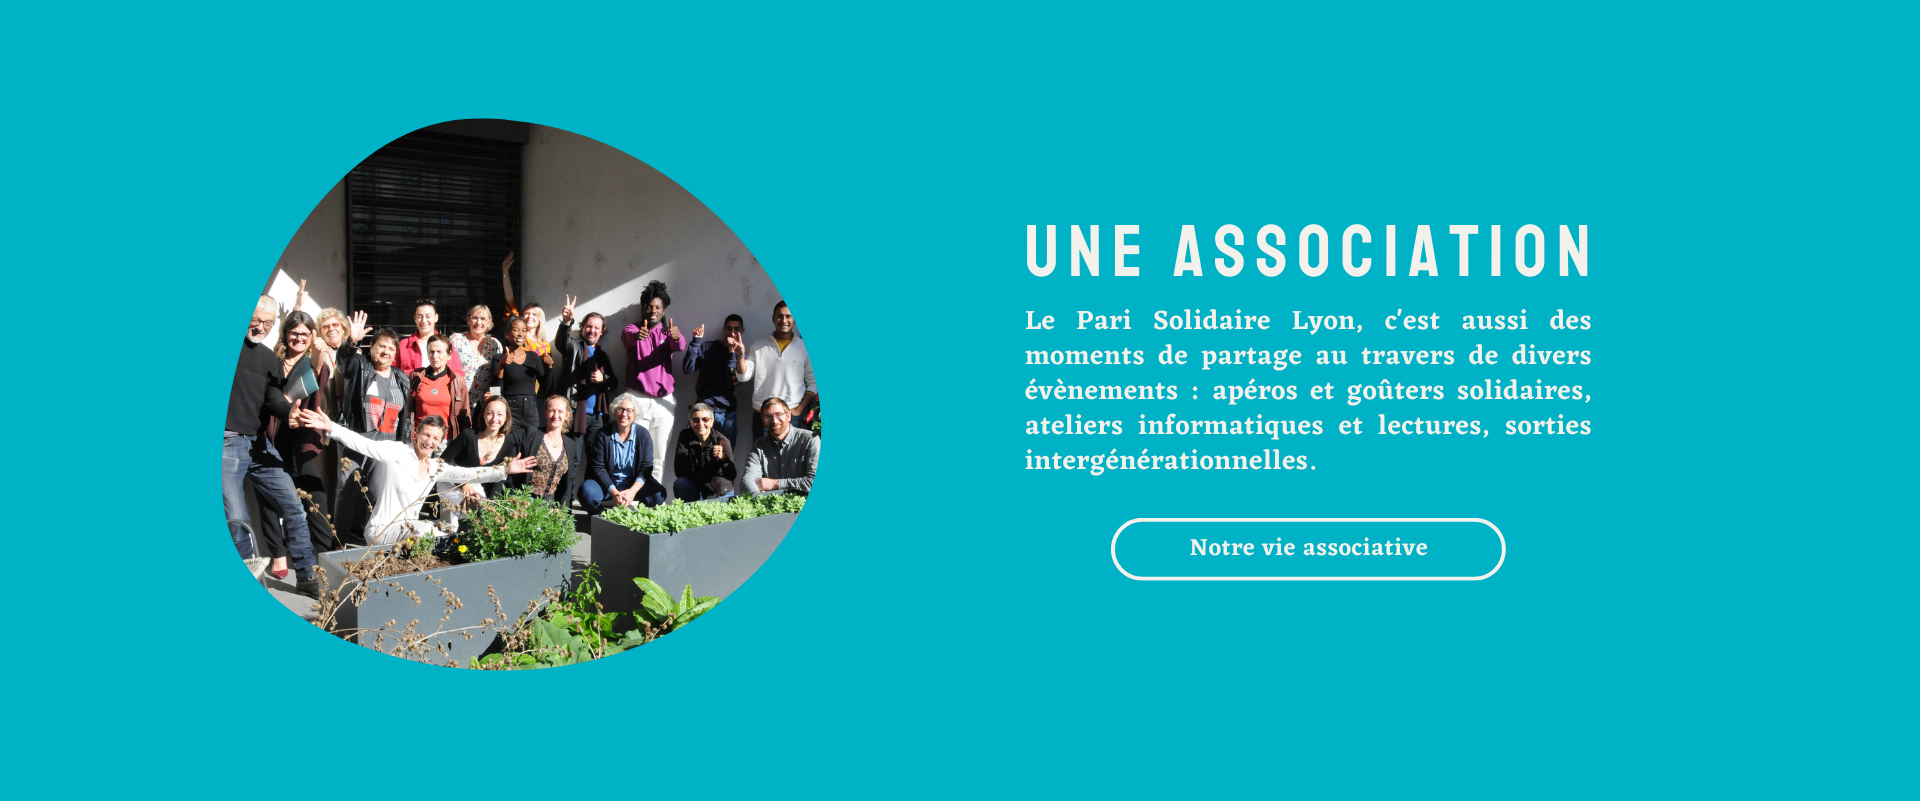 Une association - Le Pari Solidaire Lyon, c'est aussi des moments de partage au travers de divers évènements : apéros et goûters solidaires, ateliers informatiques et lectures, sorties intergénérationnelles.